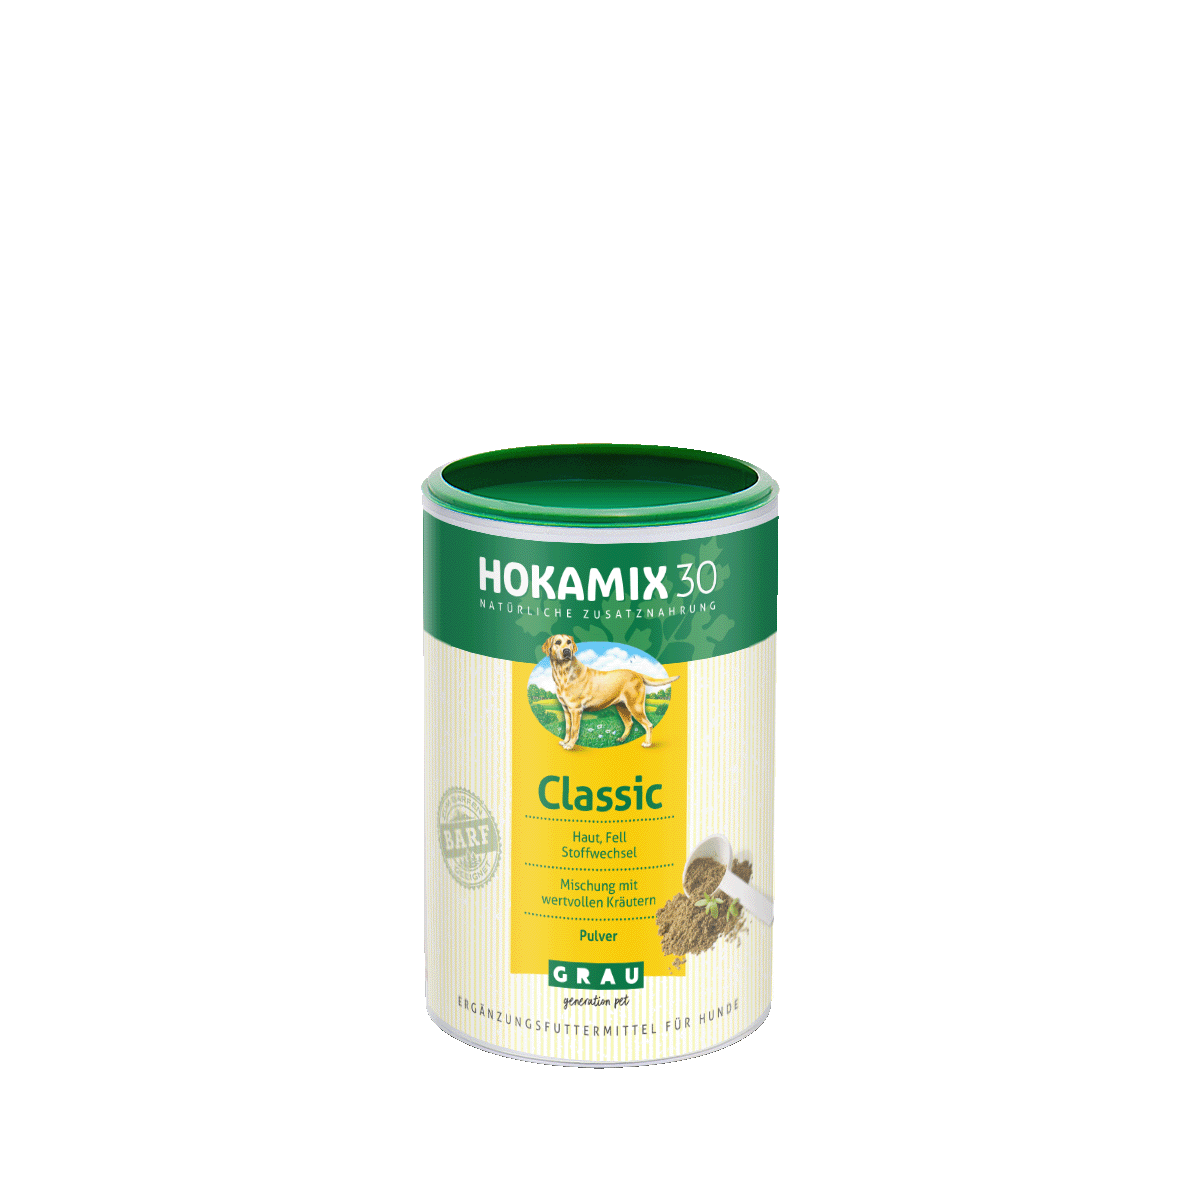 HOKAMIX30 Classic Pulver ist eine Kräutermischung mit Vitaminen, Mineralstoffen und bioaktiven Wirkstoffen, die Haut und Fell, Stoffwechsel, Bewegungsapparat und vieles mehr unterstützt.